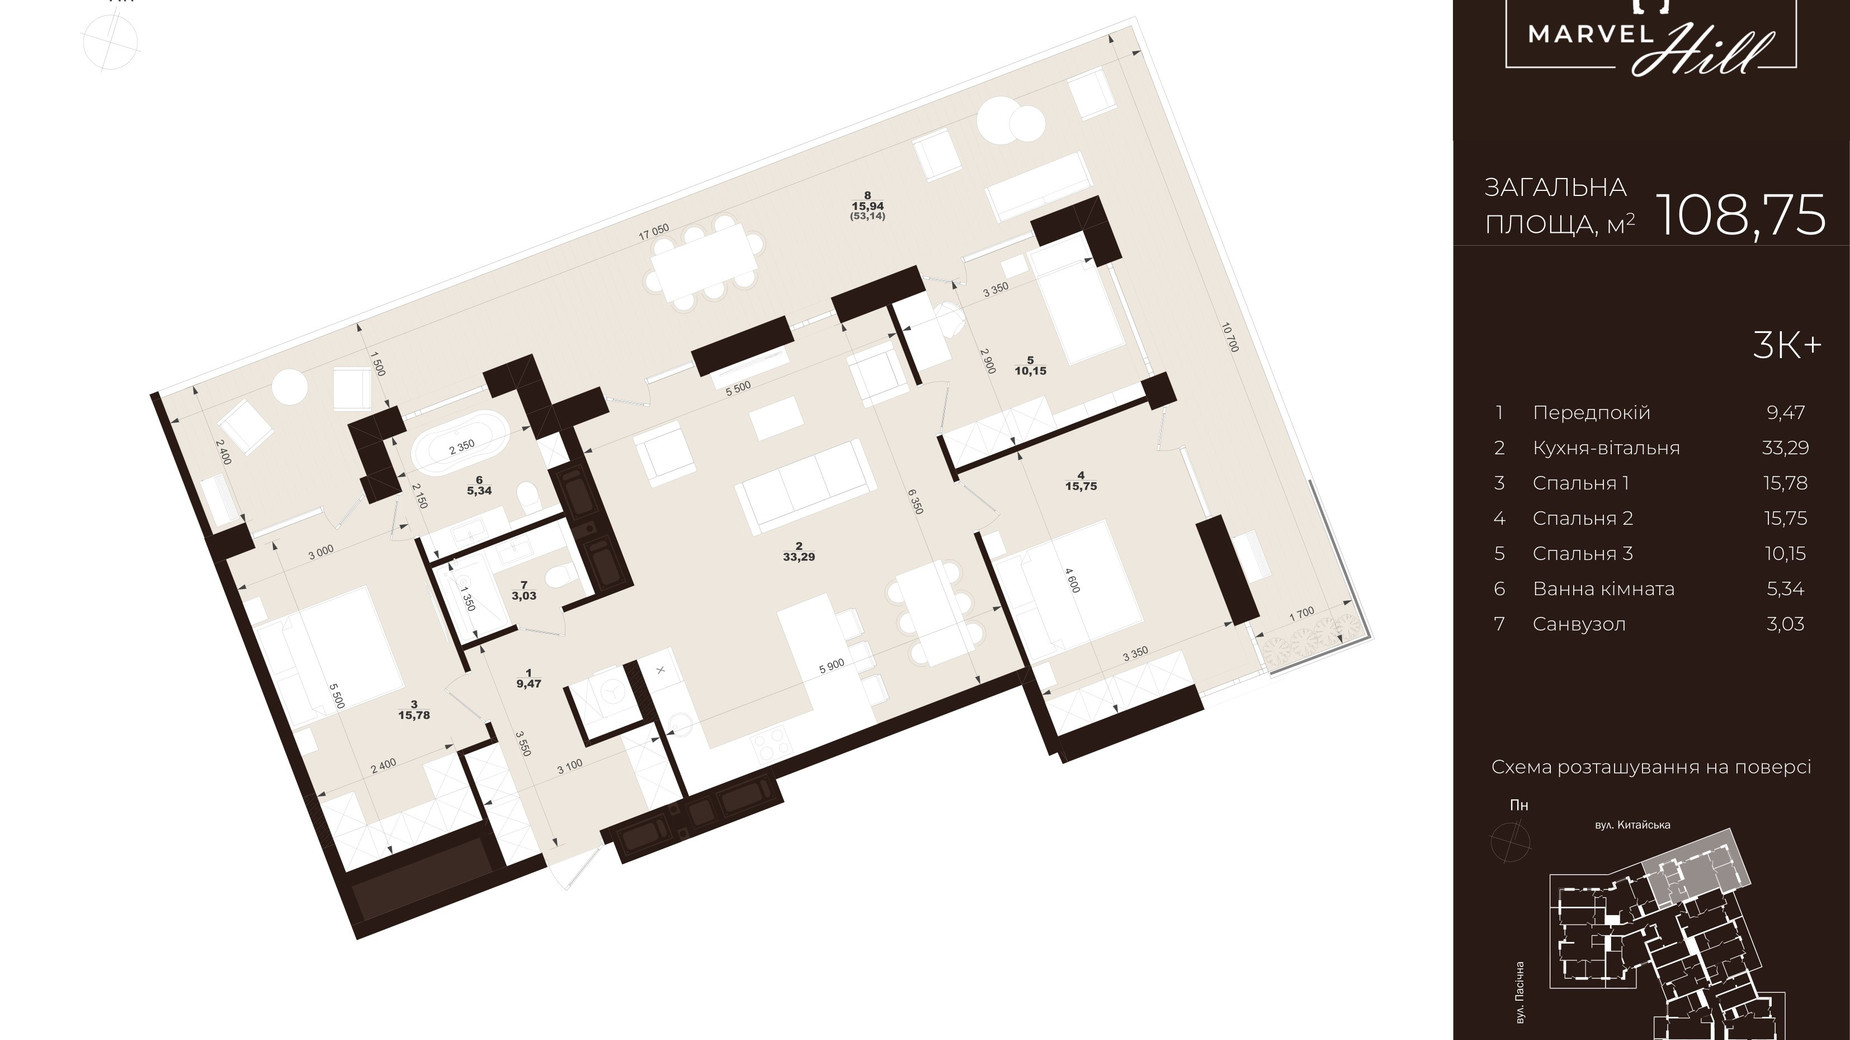 Планировка 3-комнатной квартиры в ЖК Marvel Hill 108.75 м², фото 602102